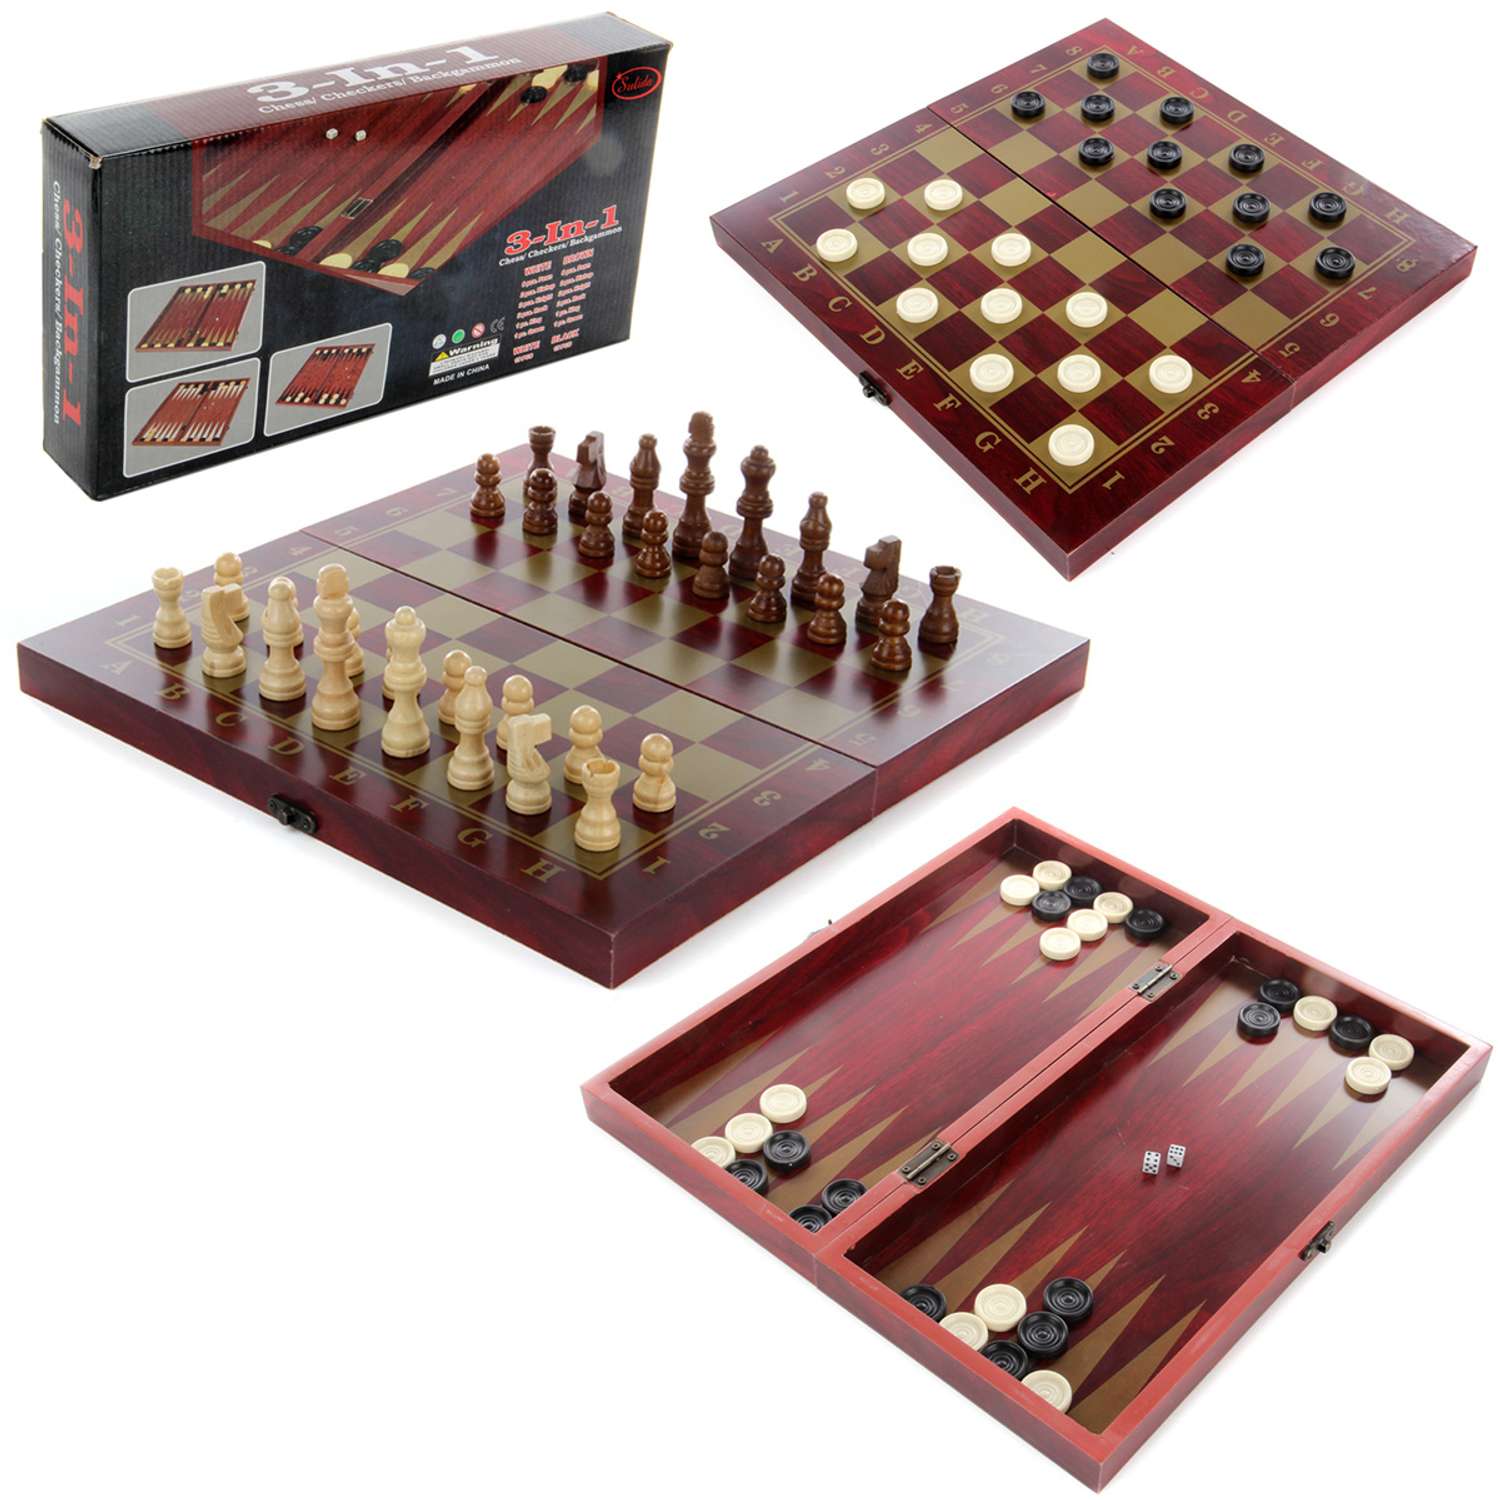 Настольная игра Veld Co шахматы 3 в 1 деревянные - фото 1